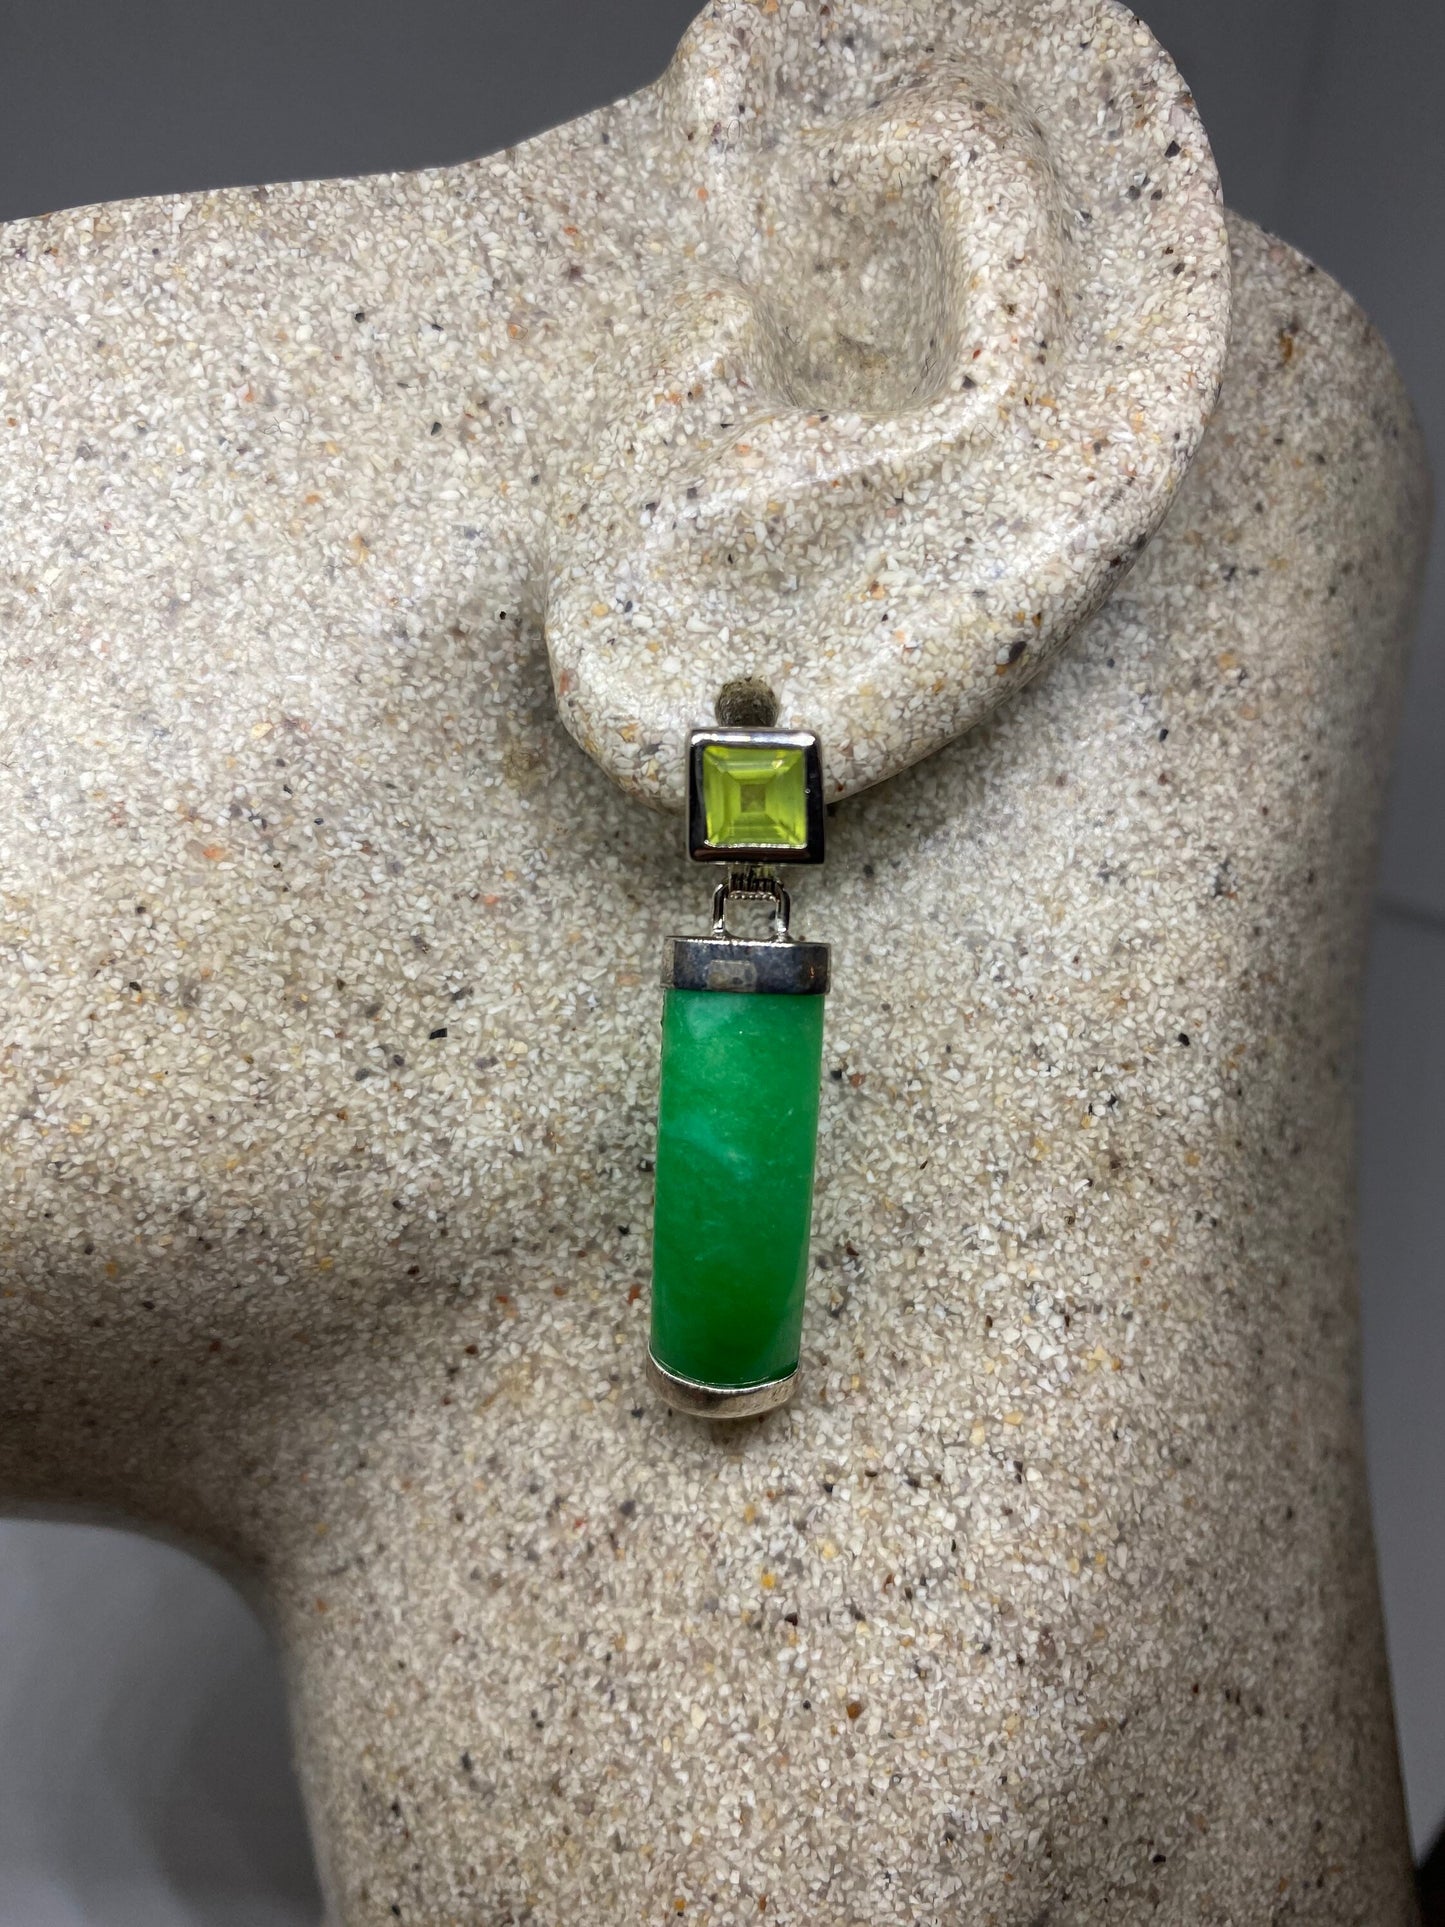 Vintage Green Jade and Peridot Gemstone Sterling Silver Heart Earrings